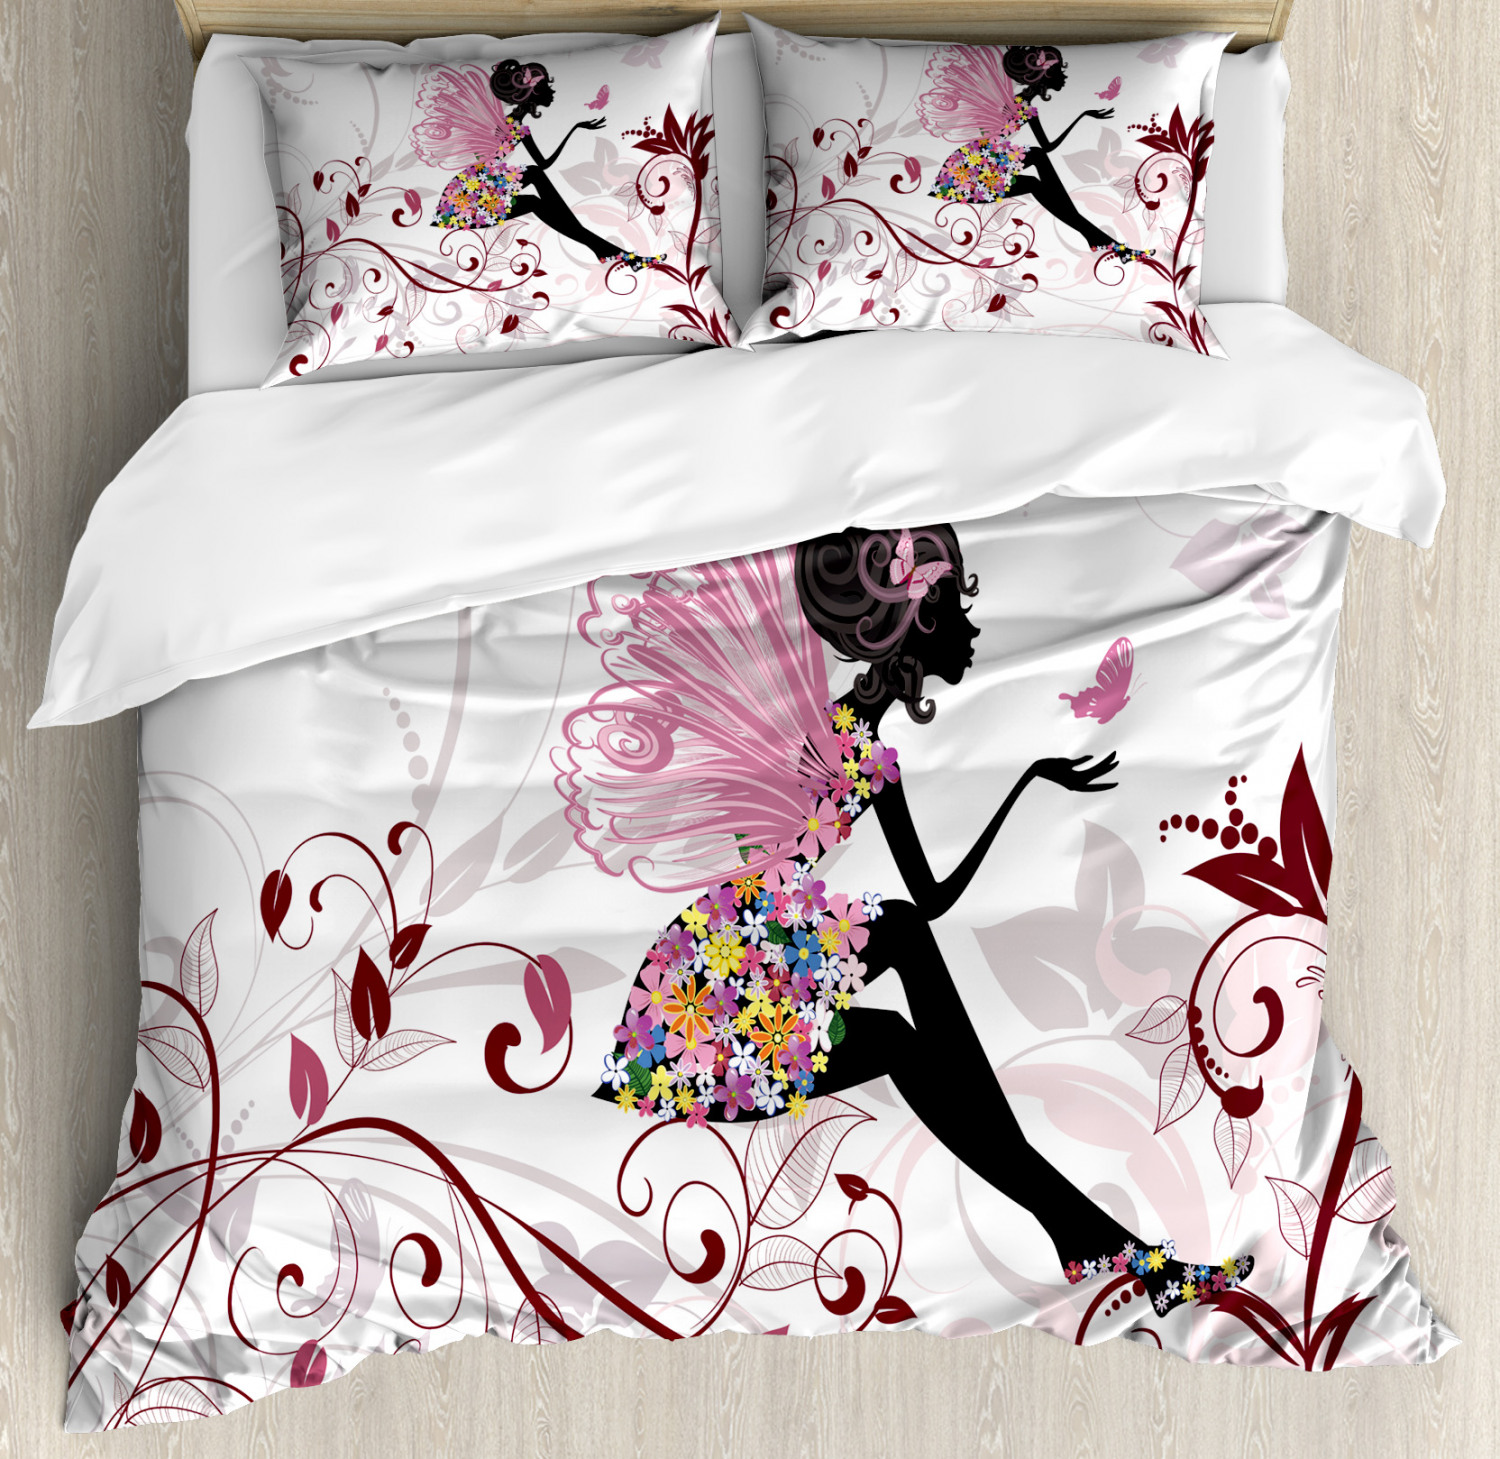 Spring Quilted Bedspread & Pillow Shams Set Flower Fairy Butterflies Print 